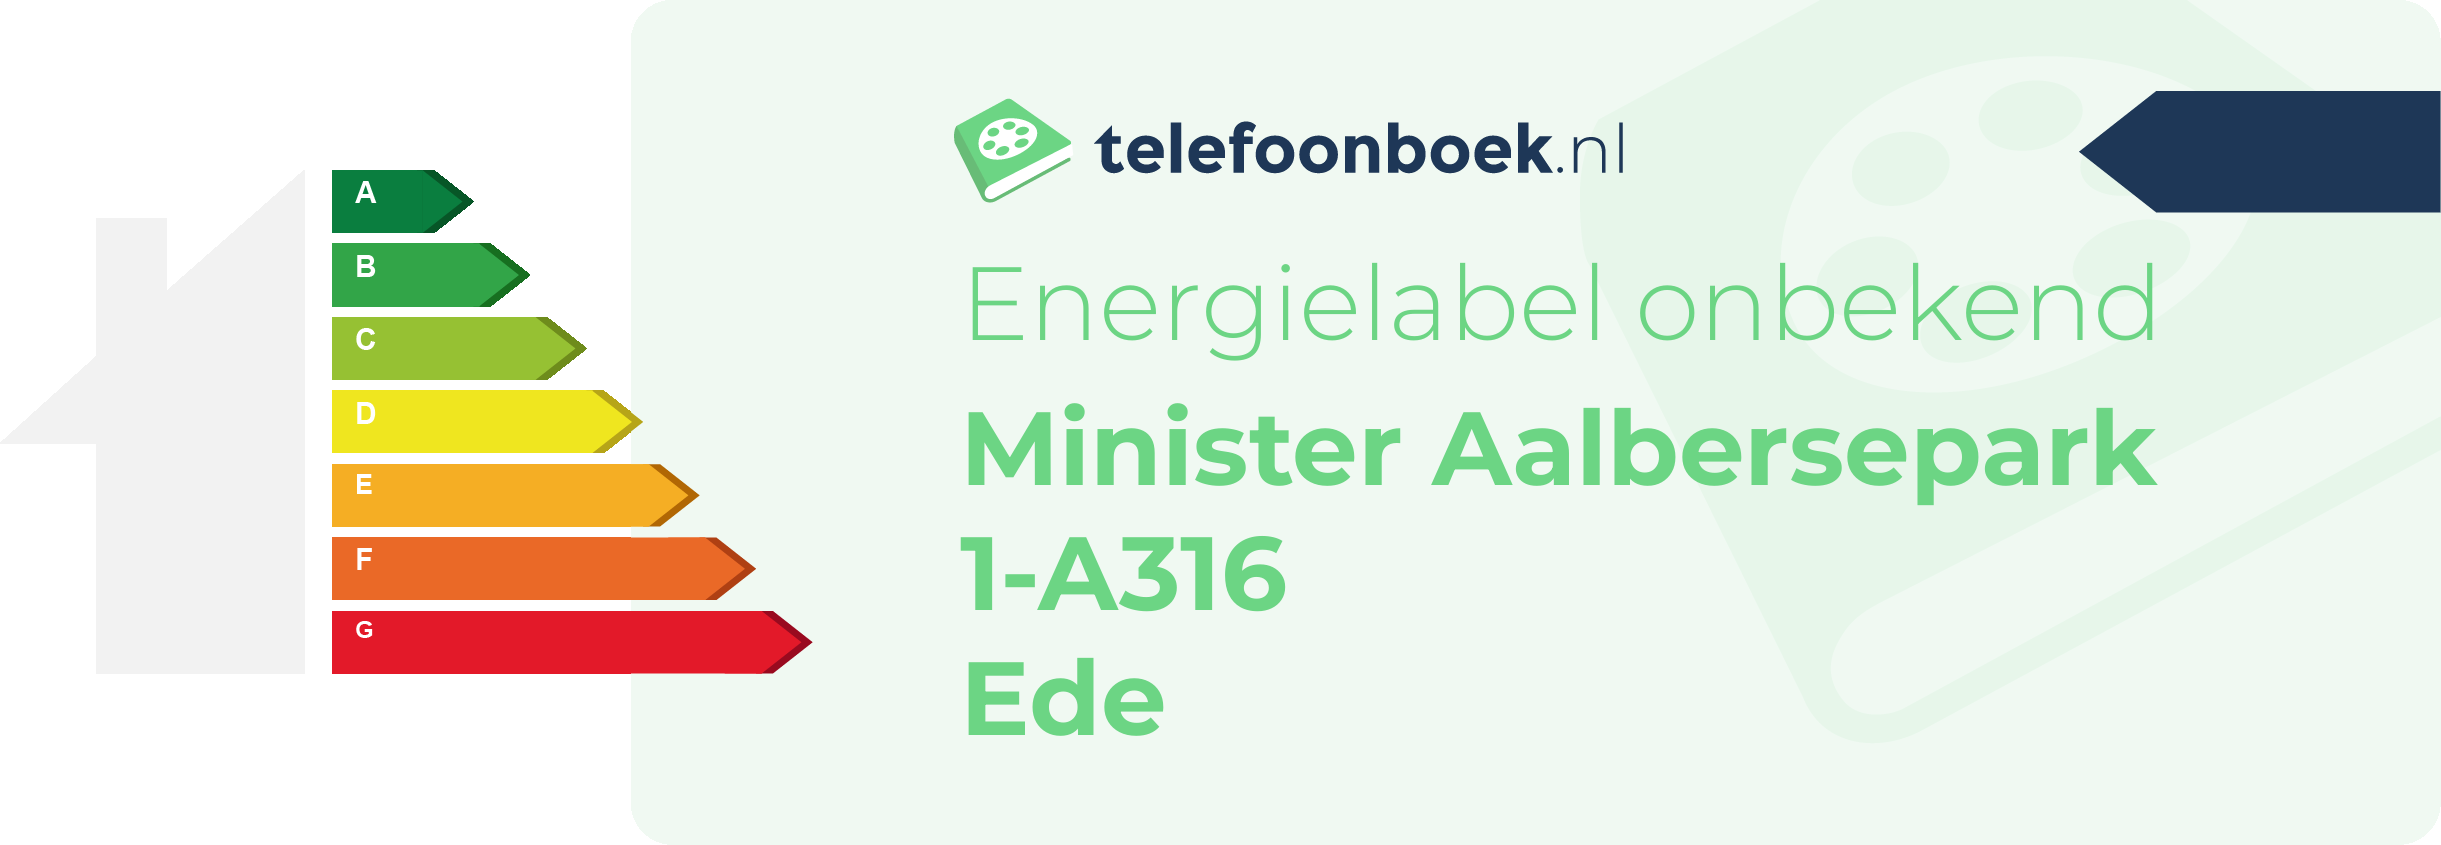 Energielabel Minister Aalbersepark 1-A316 Ede